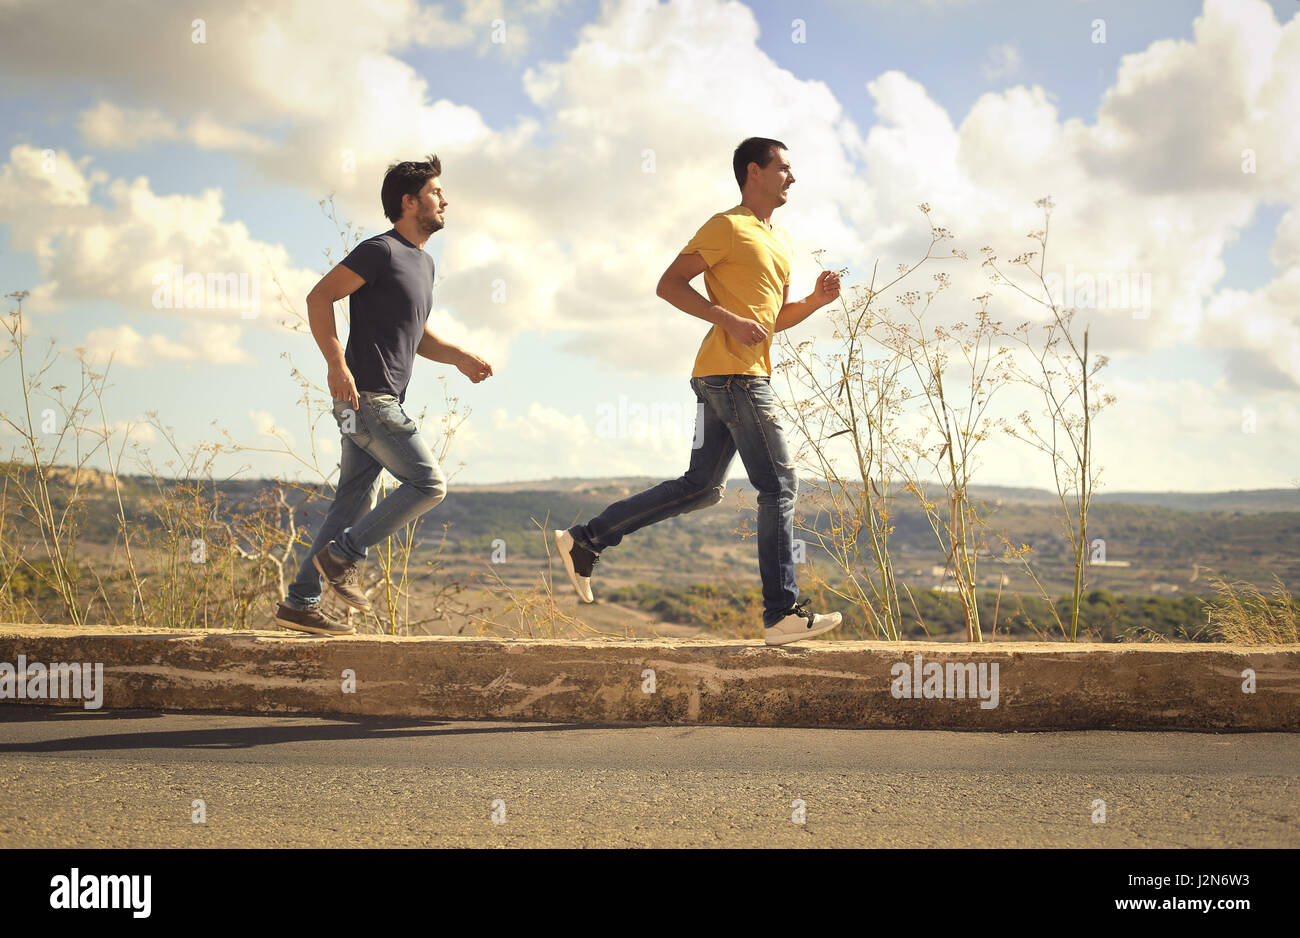 2 men running outside Stock Photo